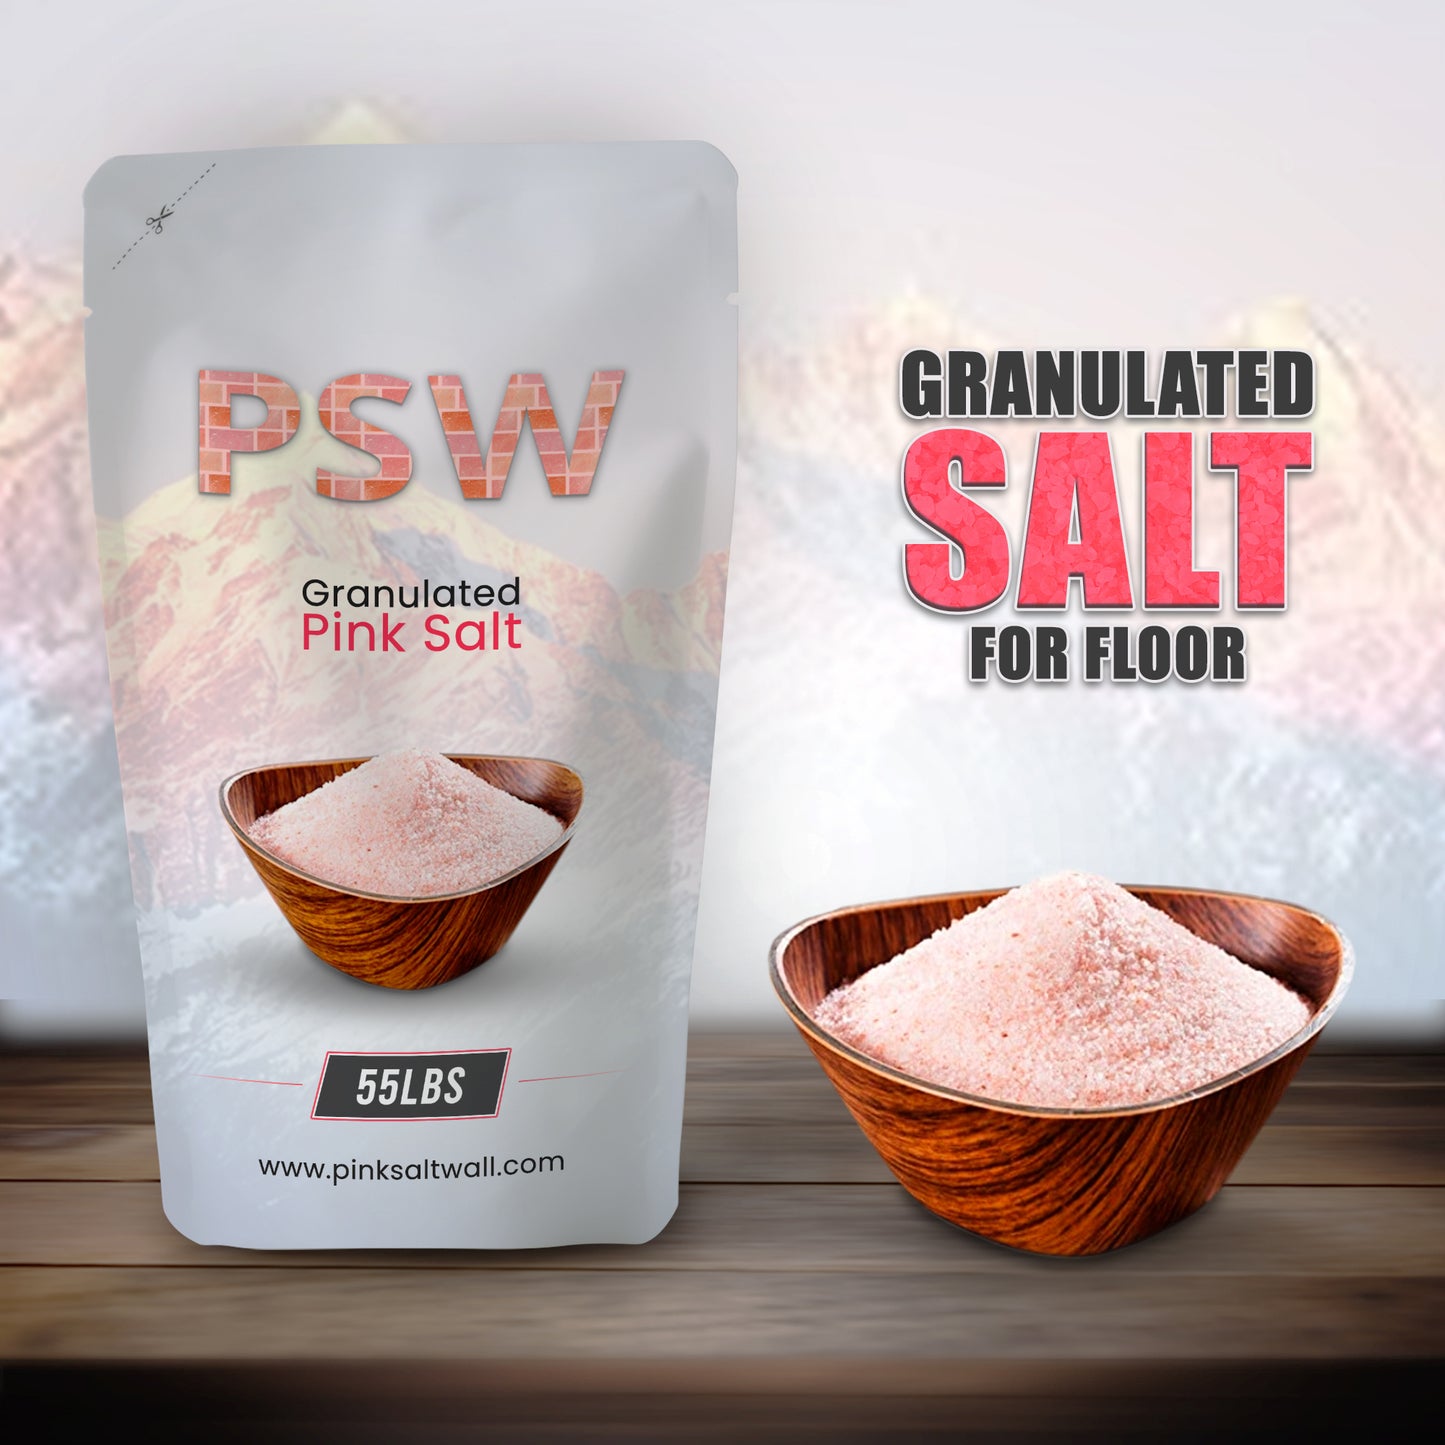 Granulated salt For Floor (55lbs Bag)